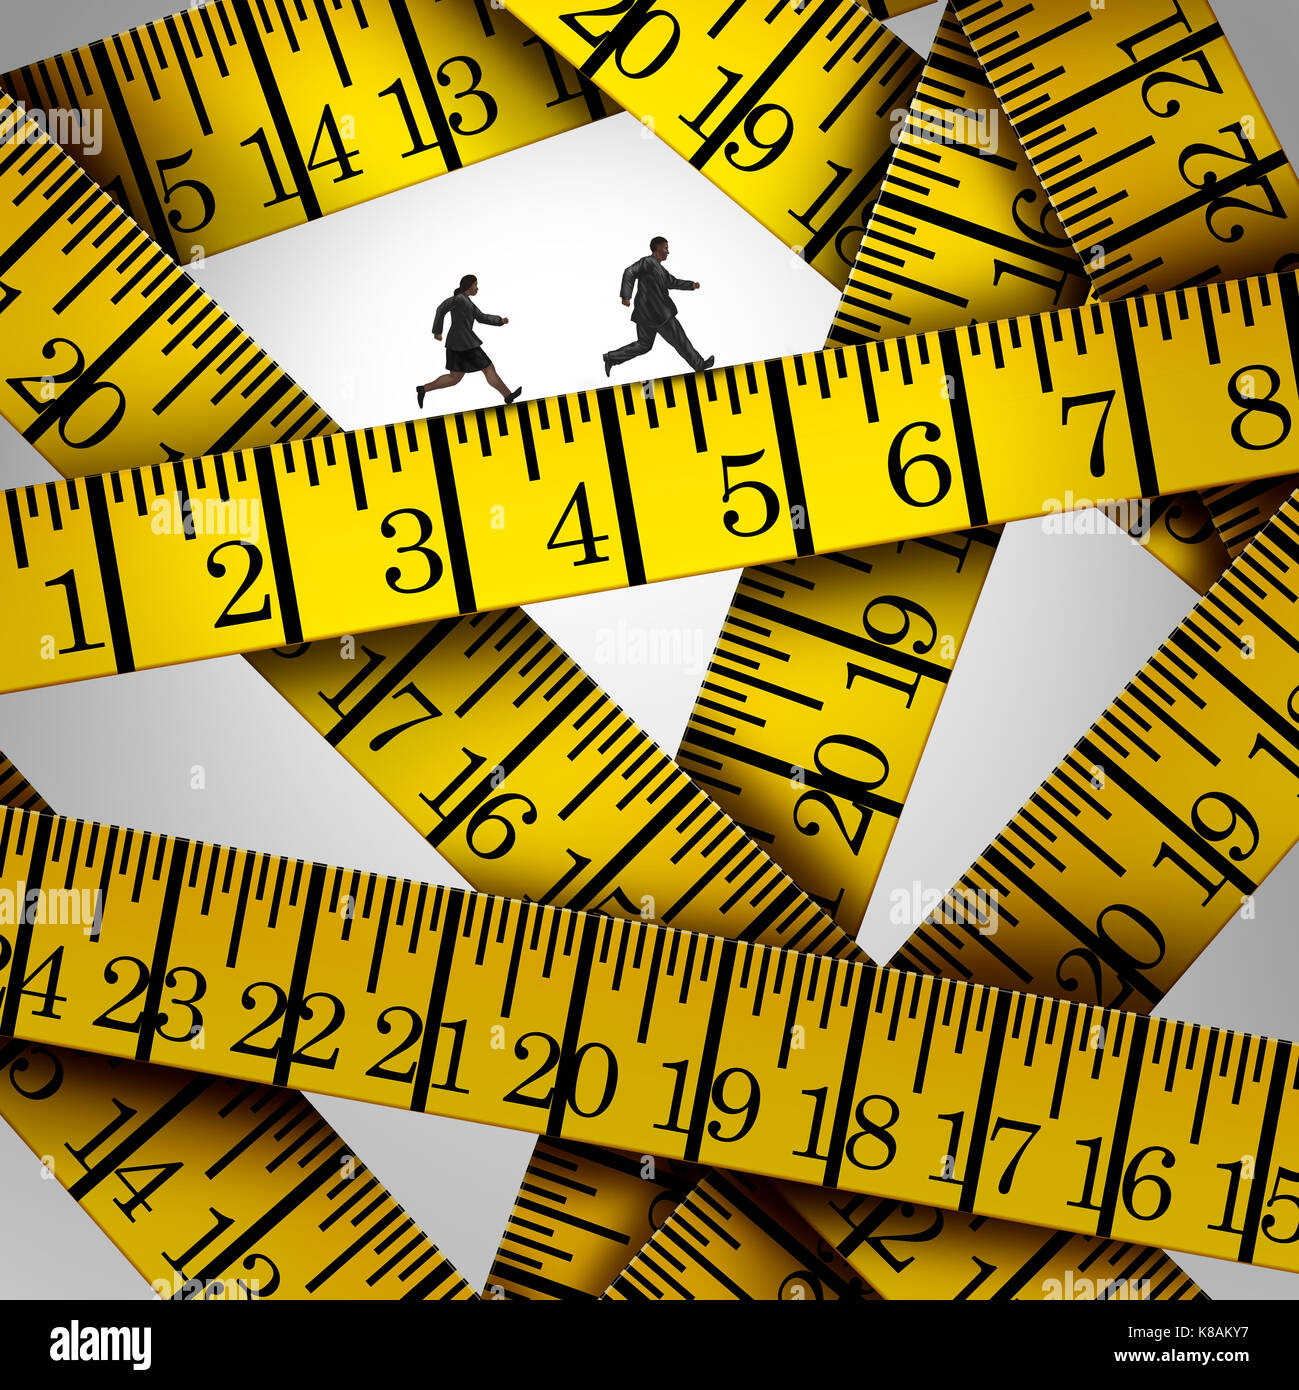 Ruban de mesure crise et contrôle du poids concept comme deux personnes de poids excessif sur un régime d'exécution sur un instrument de mesure dans un style 3d illustration. Banque D'Images